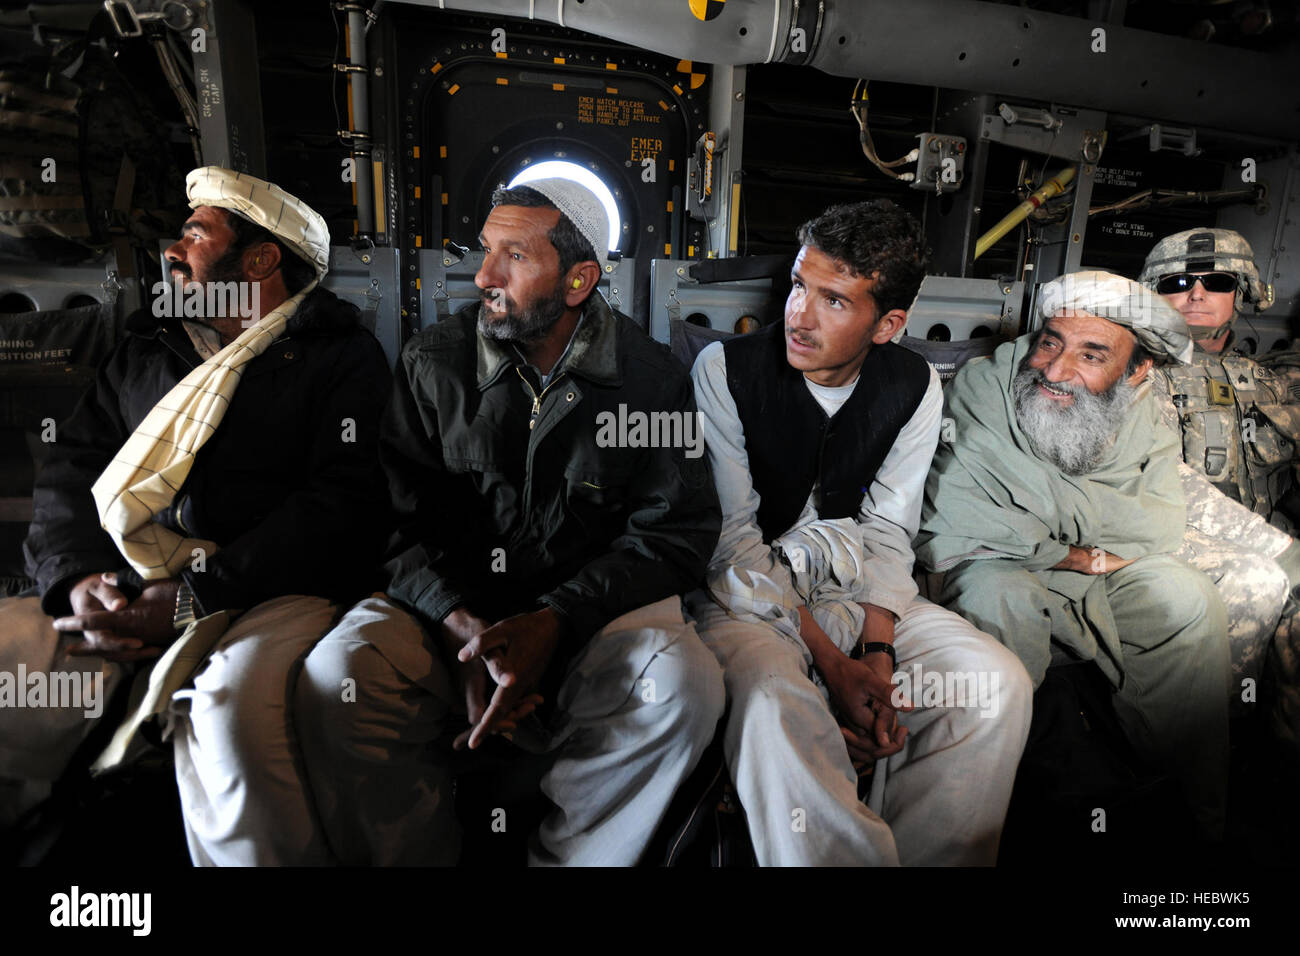 Équitation sur un V-22 Osprey maritime pour la première fois, l'agent de recensement Golestan Hasim Khan, Amir Mohammad, Abdul Zaher, et l'actuel gouverneur de district. pour le Golestan, Qasim Khan, les clients de la province de Farah Gov. Rahool Amin, montre que l'avion à rotors basculants fait un décollage vertical à partir de la base d'opérations avancée (BOA) Farah, l'Afghanistan, sur sa façon de Golestan FOB où Gov. Amin et ses invités seront conviés à une réunion, le 4 janvier 2010. C'est la troisième fois que le gouverneur a été de Golestan avec l'aide de l'Équipe de reconstruction provinciale de Farah. Banque D'Images